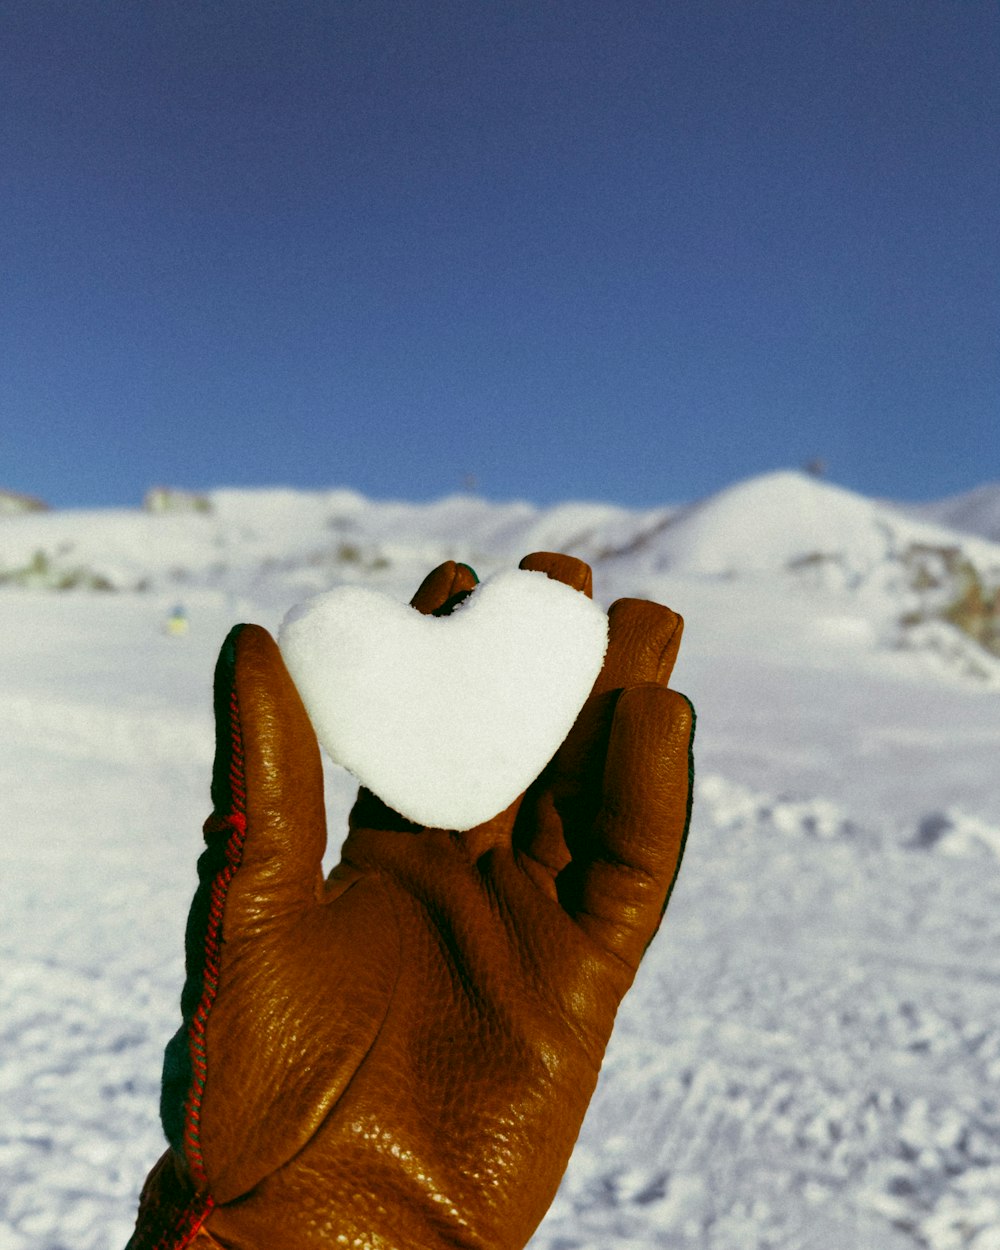 una mano guantata che tiene un oggetto a forma di cuore nella neve